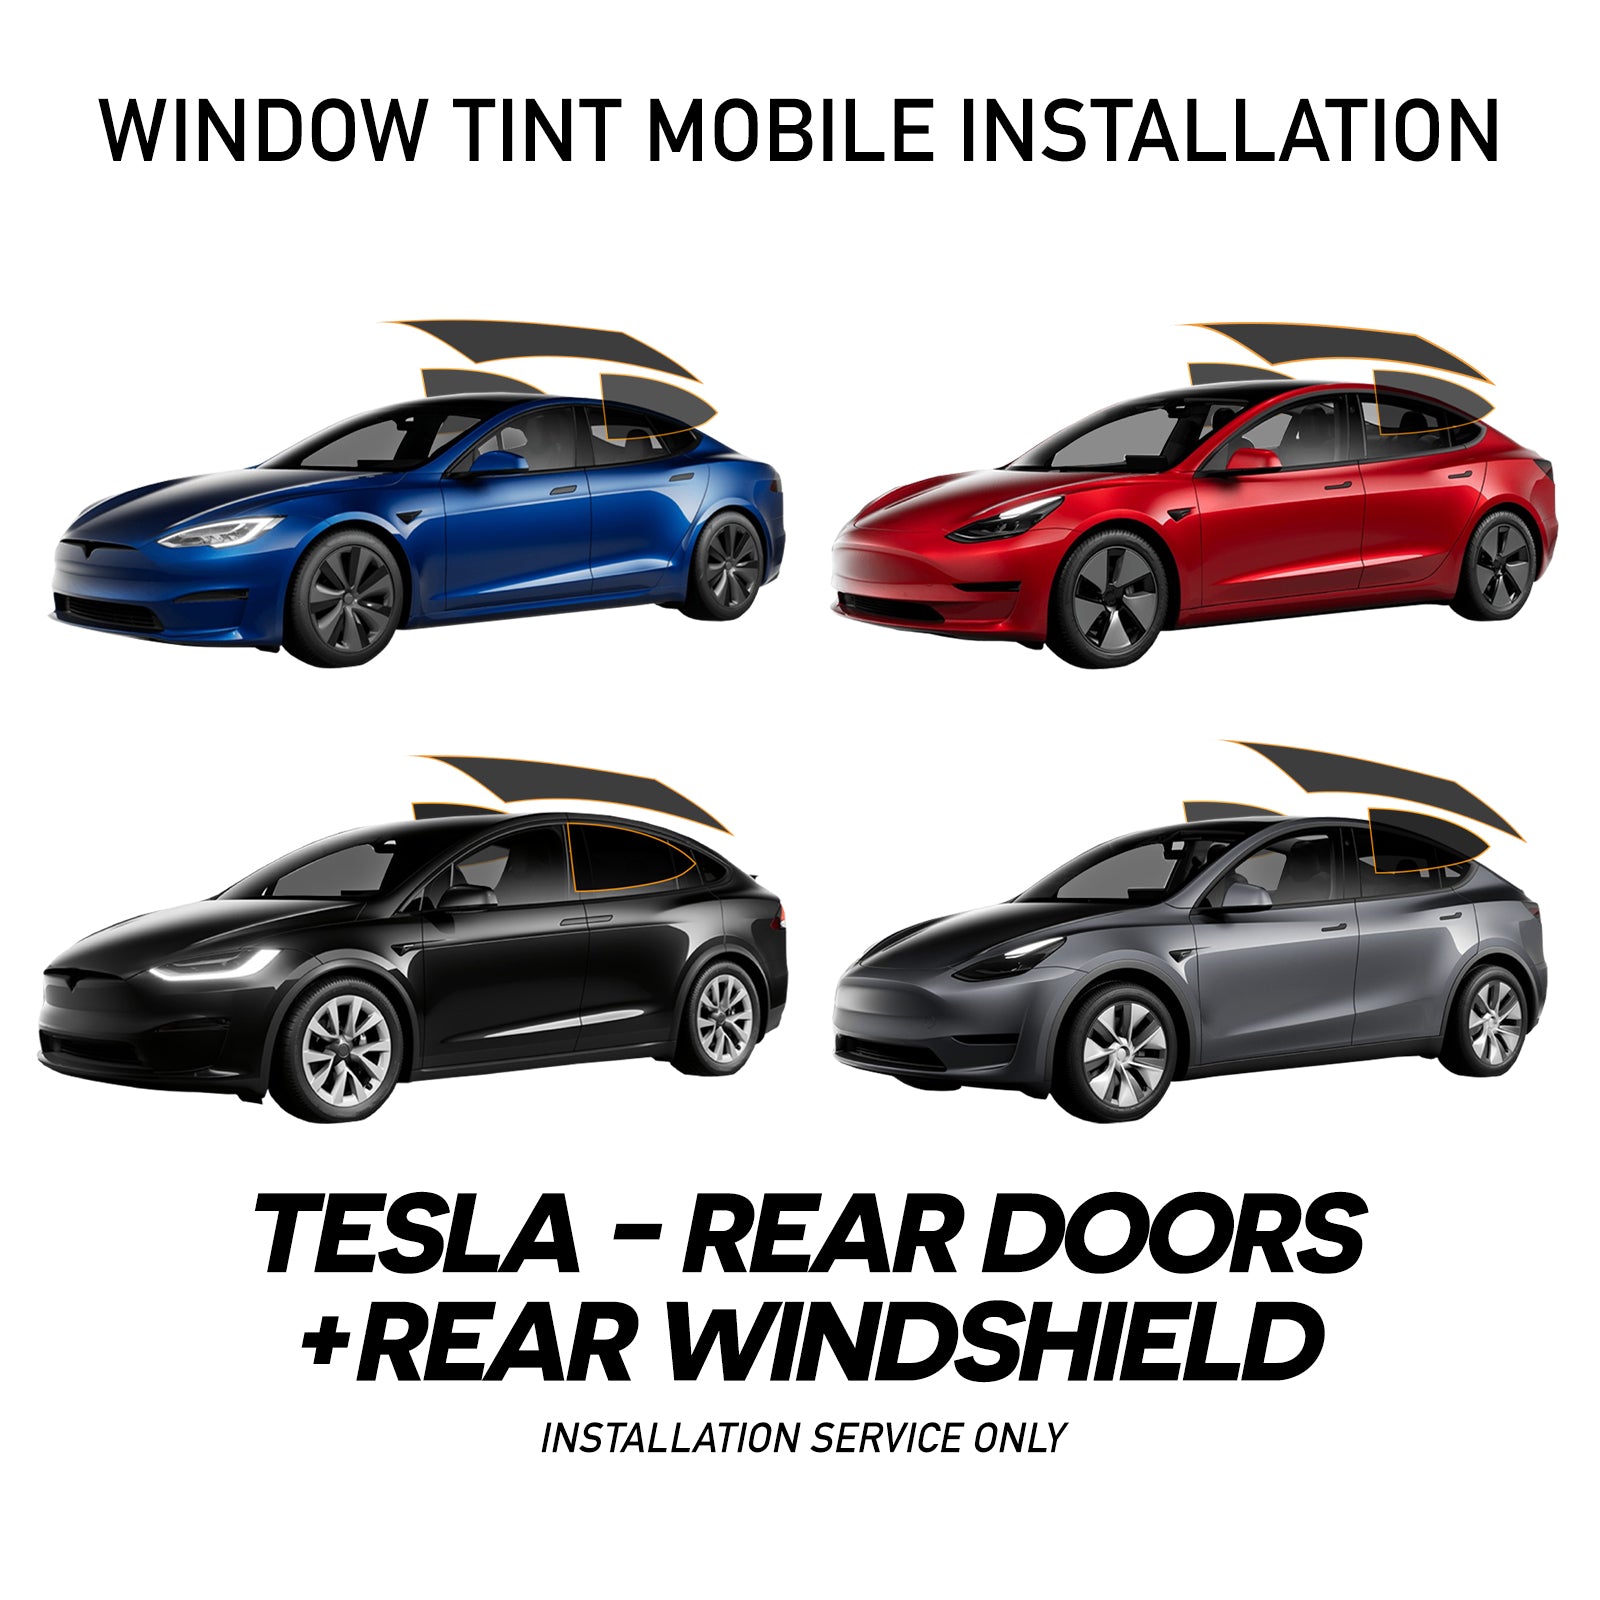 WINDOW TINT MOBILE INSTALLATION FOR TESLA - REAR DOORS + REAR WINDSHIELD